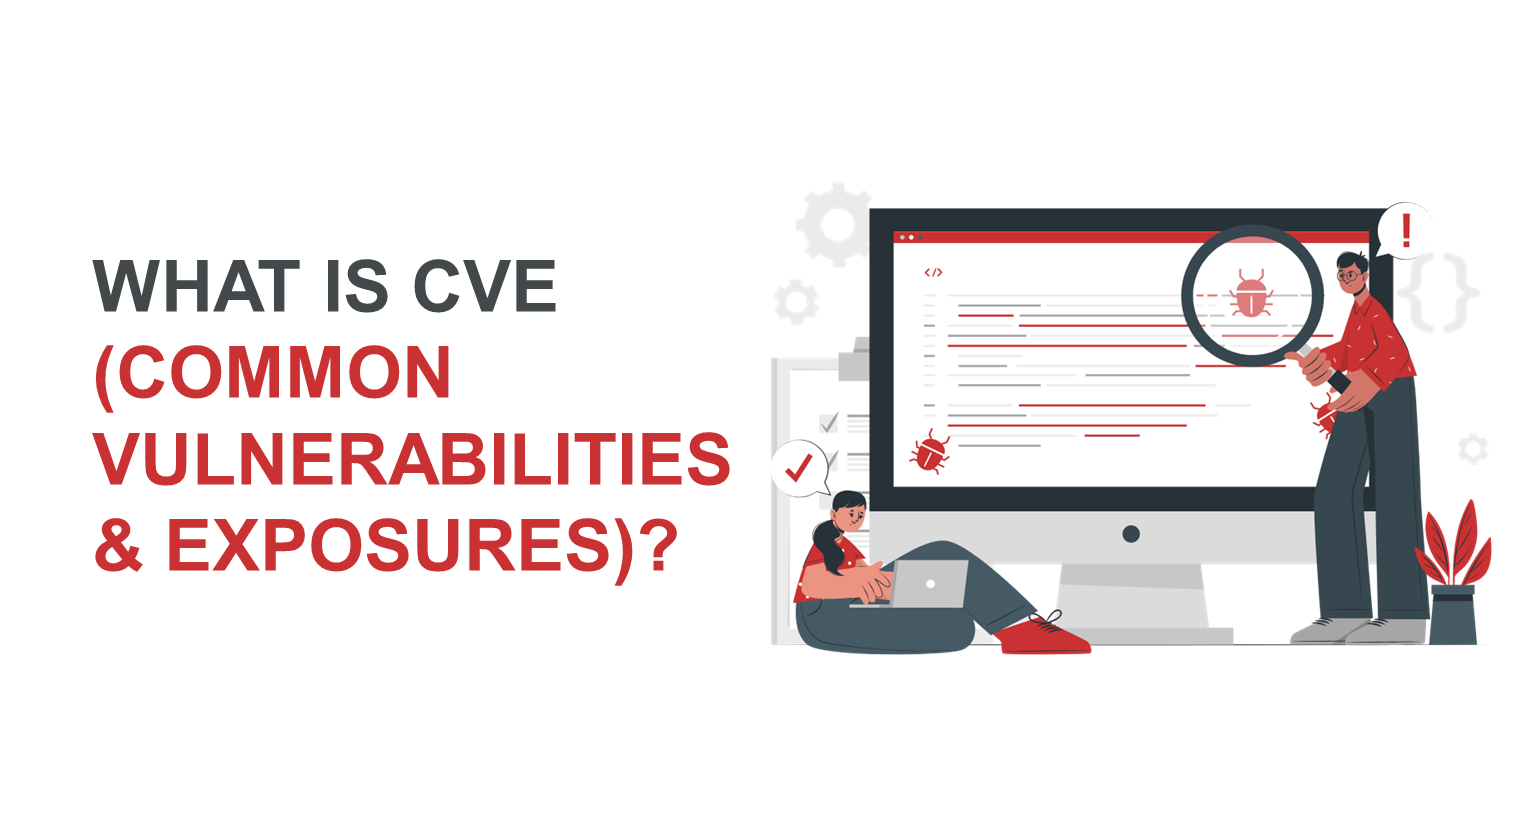 What is CVE (Common Vulnerabilities and Exposures)?